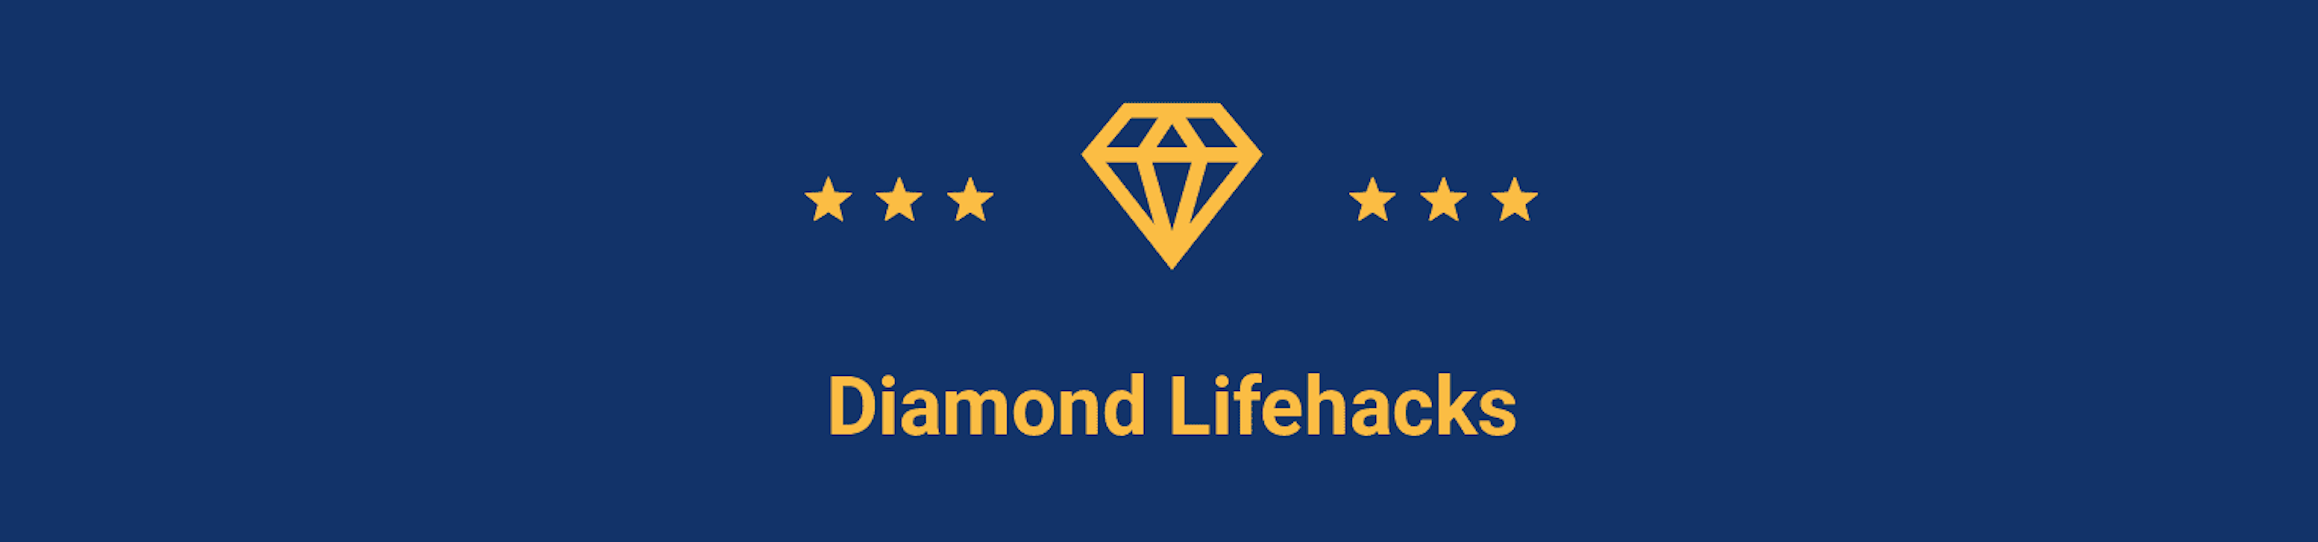 Diamond Lifehacks